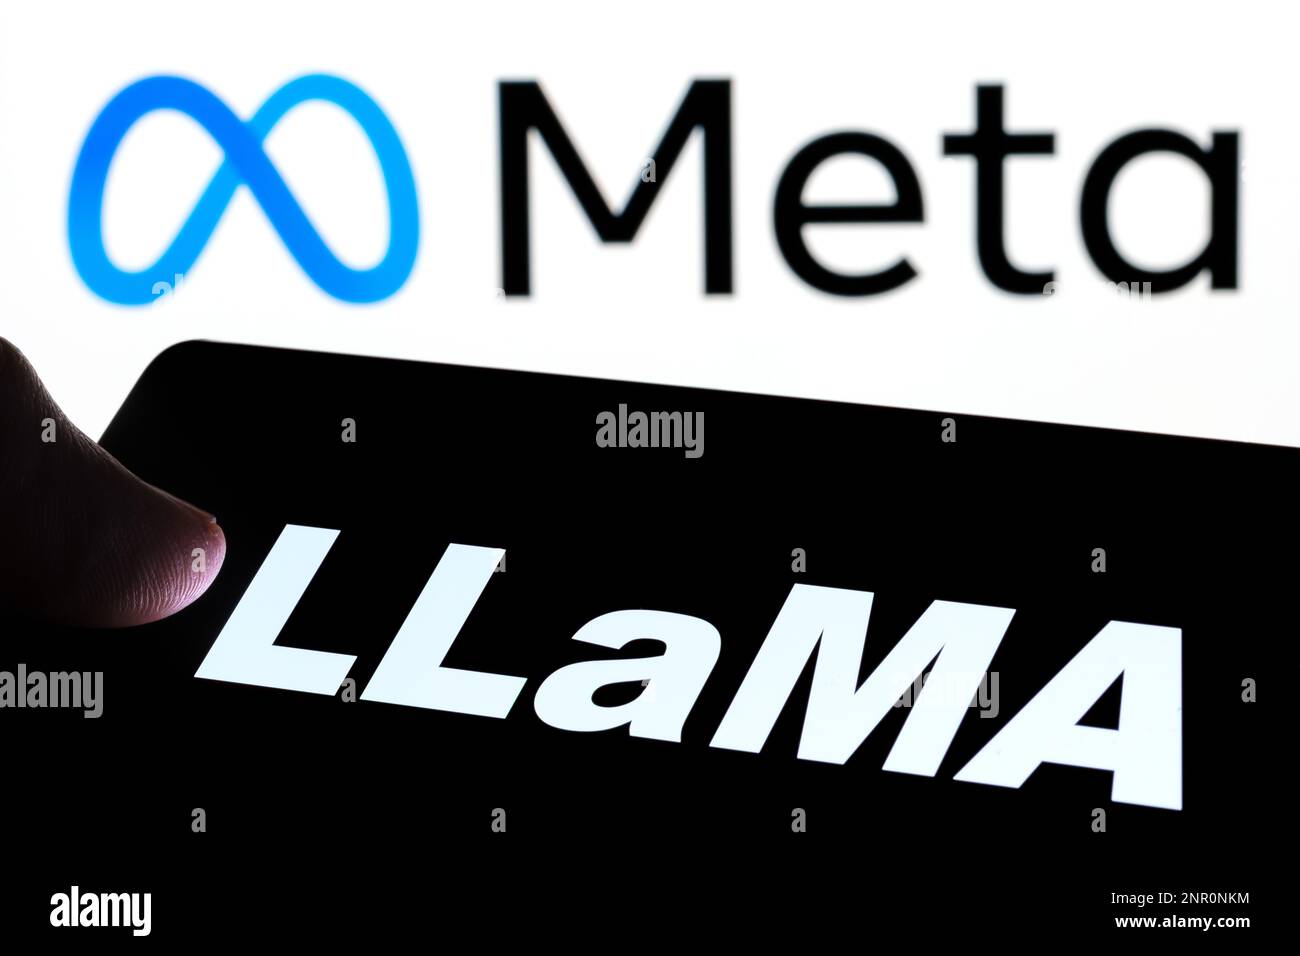 Lama-Buchstaben auf dem Smartphone und verschwommenes Firmenlogo von Meta auf dem Hintergrund. Llama ist ein großes Sprachmodell für Meta-KI von Meta Platforms. Stafford, Großbritannien, Stockfoto